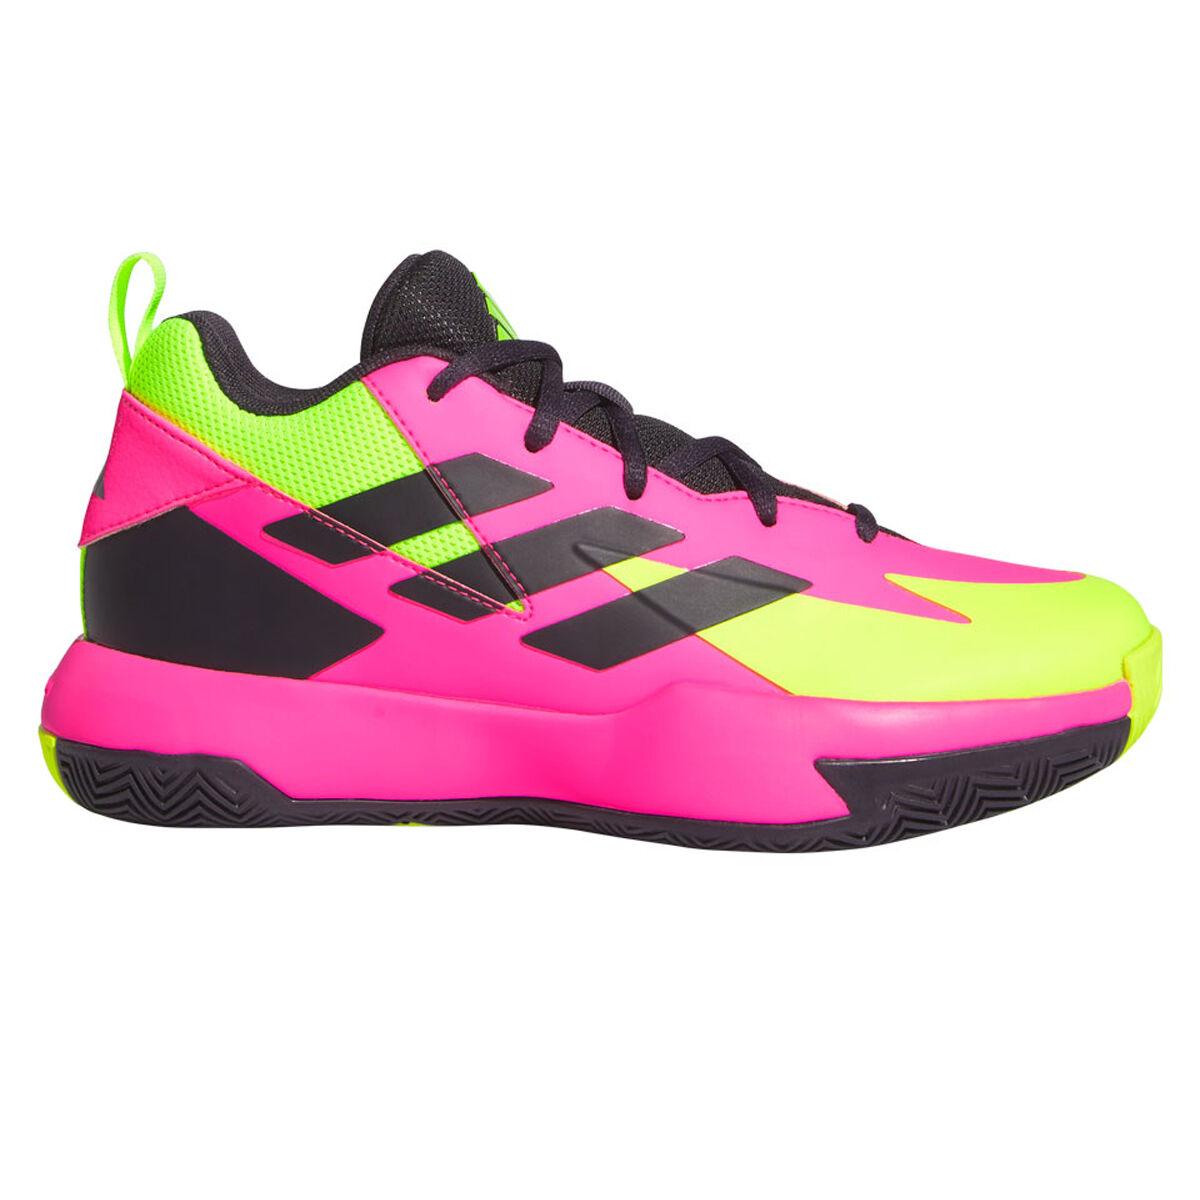 adidas Cross 'Em Up Select Wide GS Kids Basketball Shoes Pink/Black US 4, Pink/Black, rebel_hi-res